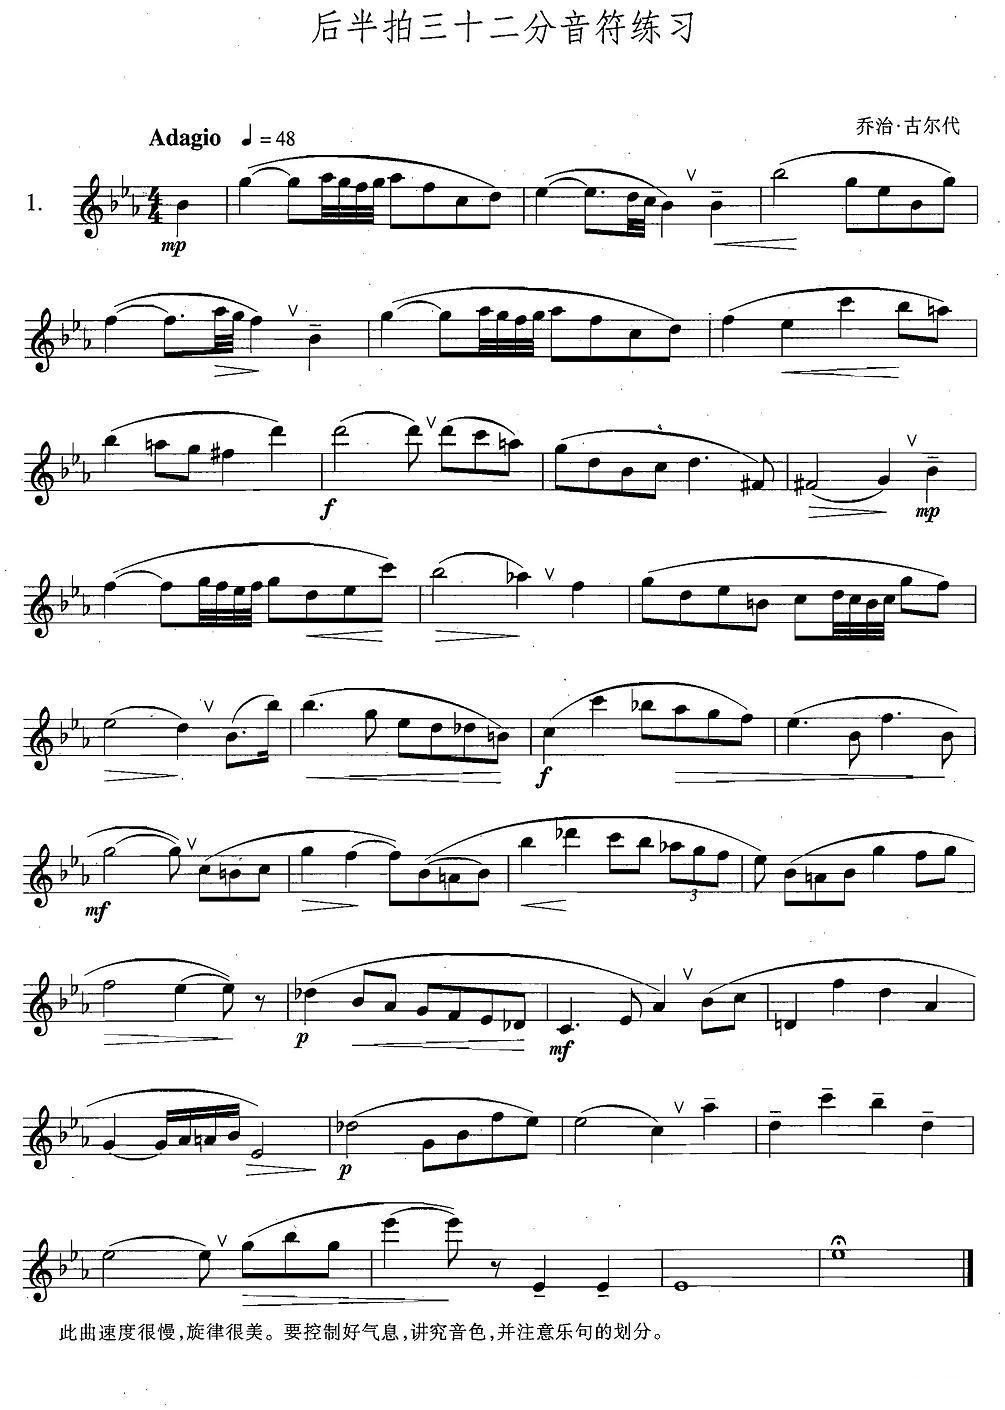 萨克斯练习曲合集 4 1 后半拍的三十二分音符练习 萨克斯谱 歌谱简谱大全